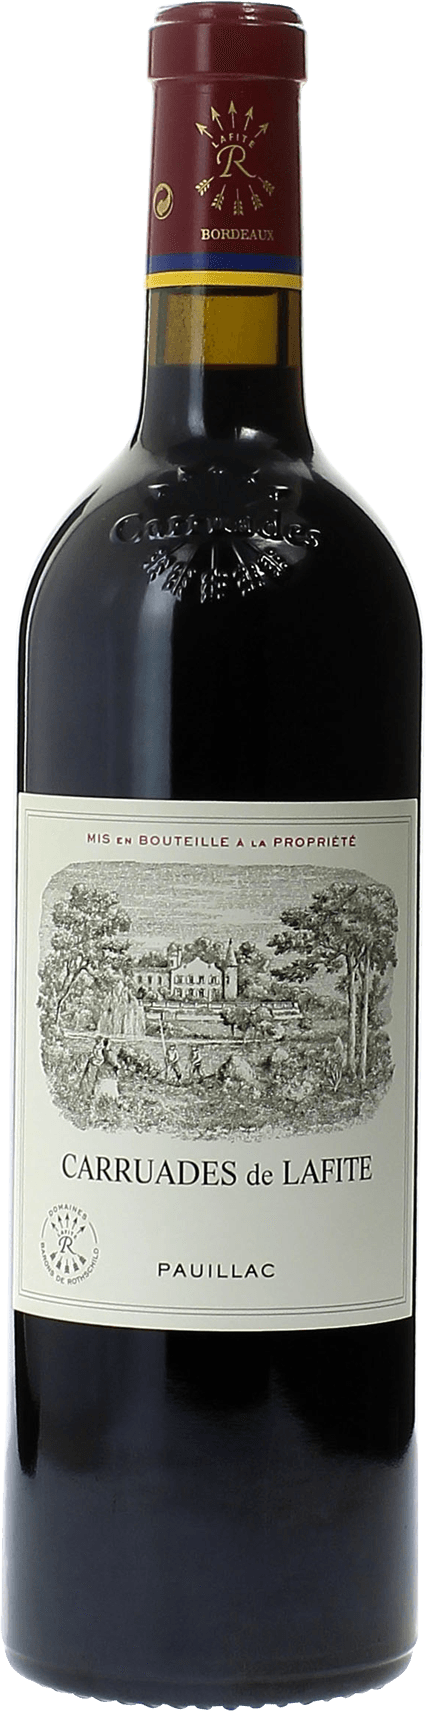 Carruades de lafite 1984 2me vin de LAFITE ROTHSCHILD Pauillac, Bordeaux rouge